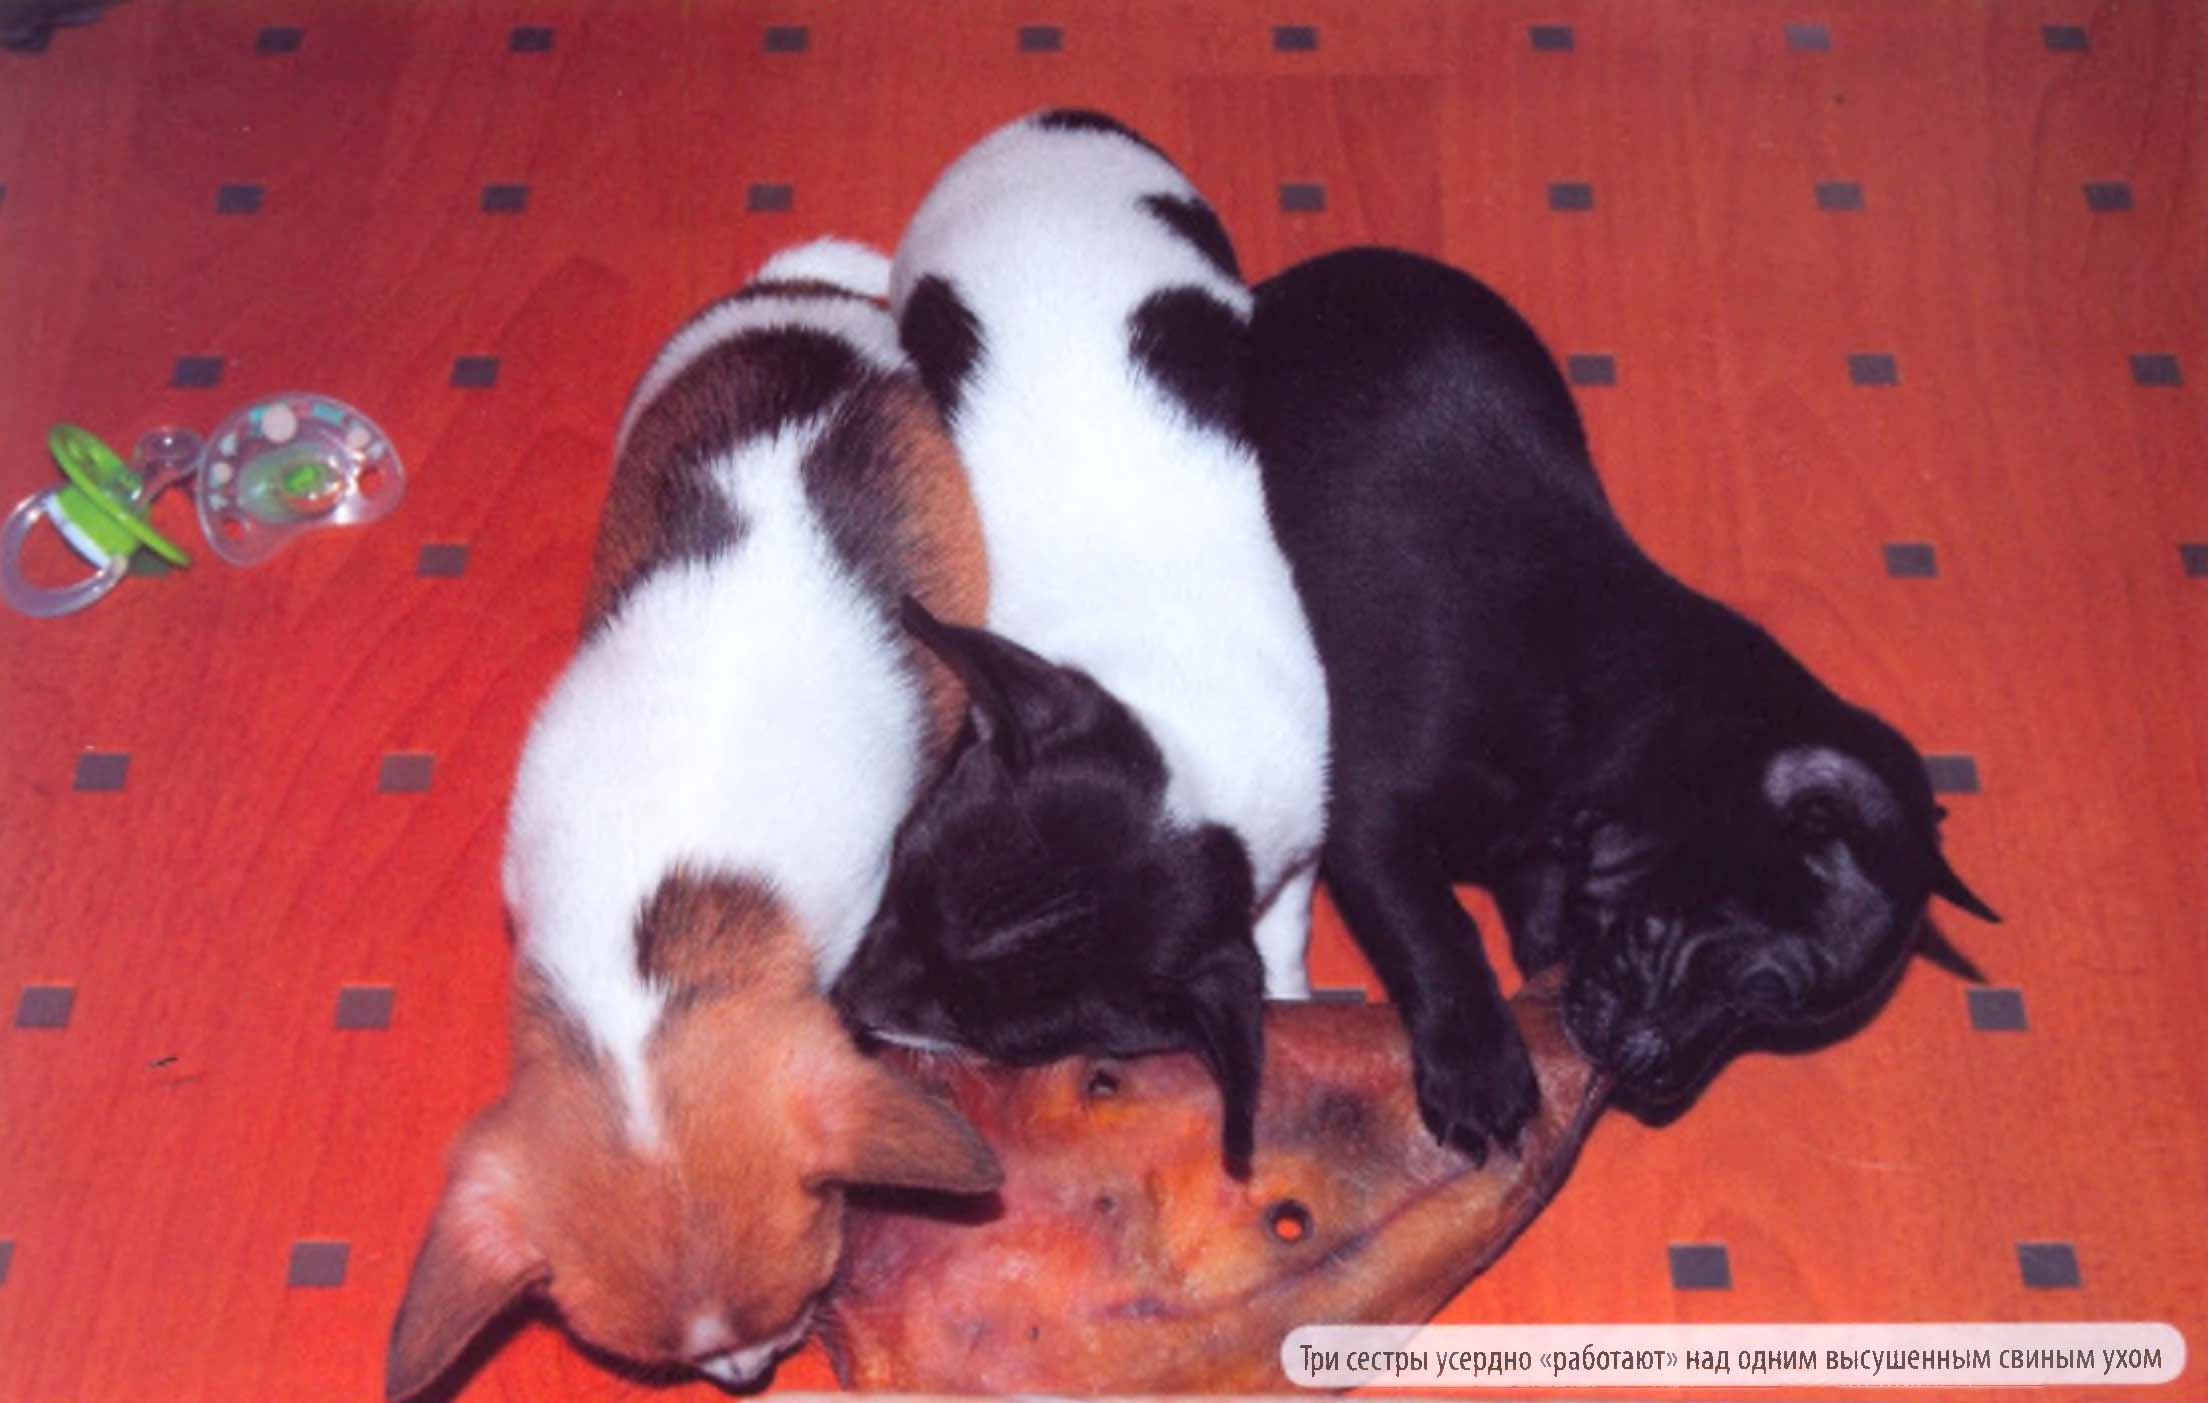 Три сестры усердно «работают» над одним высушенным свиным ухом.
